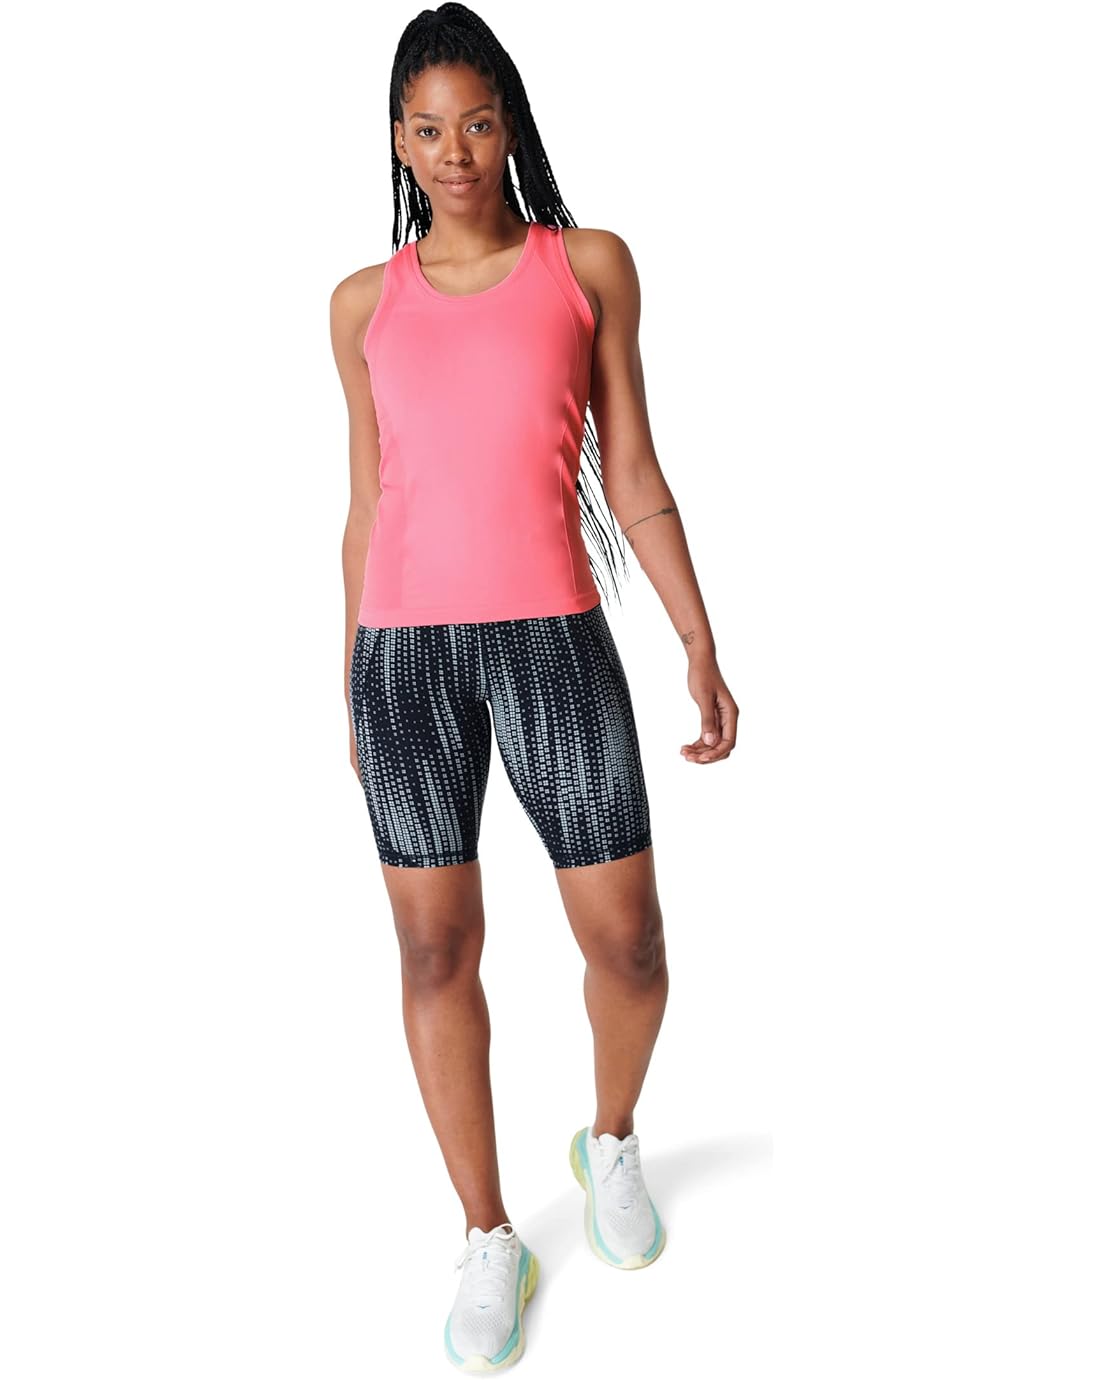 Sweaty Betty Athlete Seamless Workout Tank Top